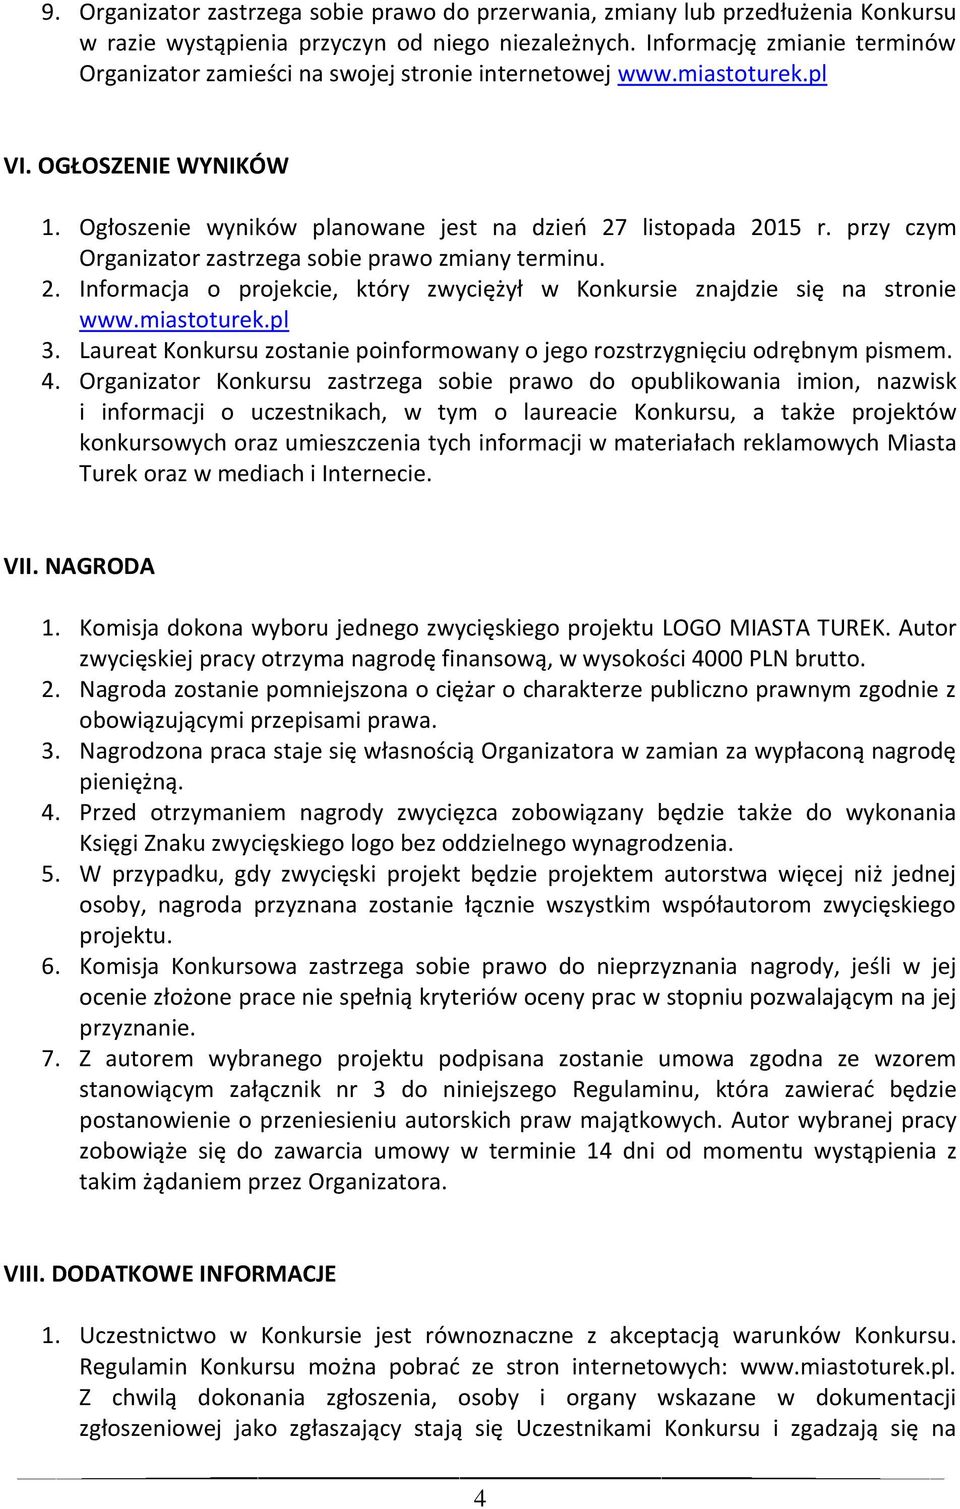 przy czym Organizator zastrzega sobie prawo zmiany terminu. 2. Informacja o projekcie, który zwyciężył w Konkursie znajdzie się na stronie www.miastoturek.pl 3.